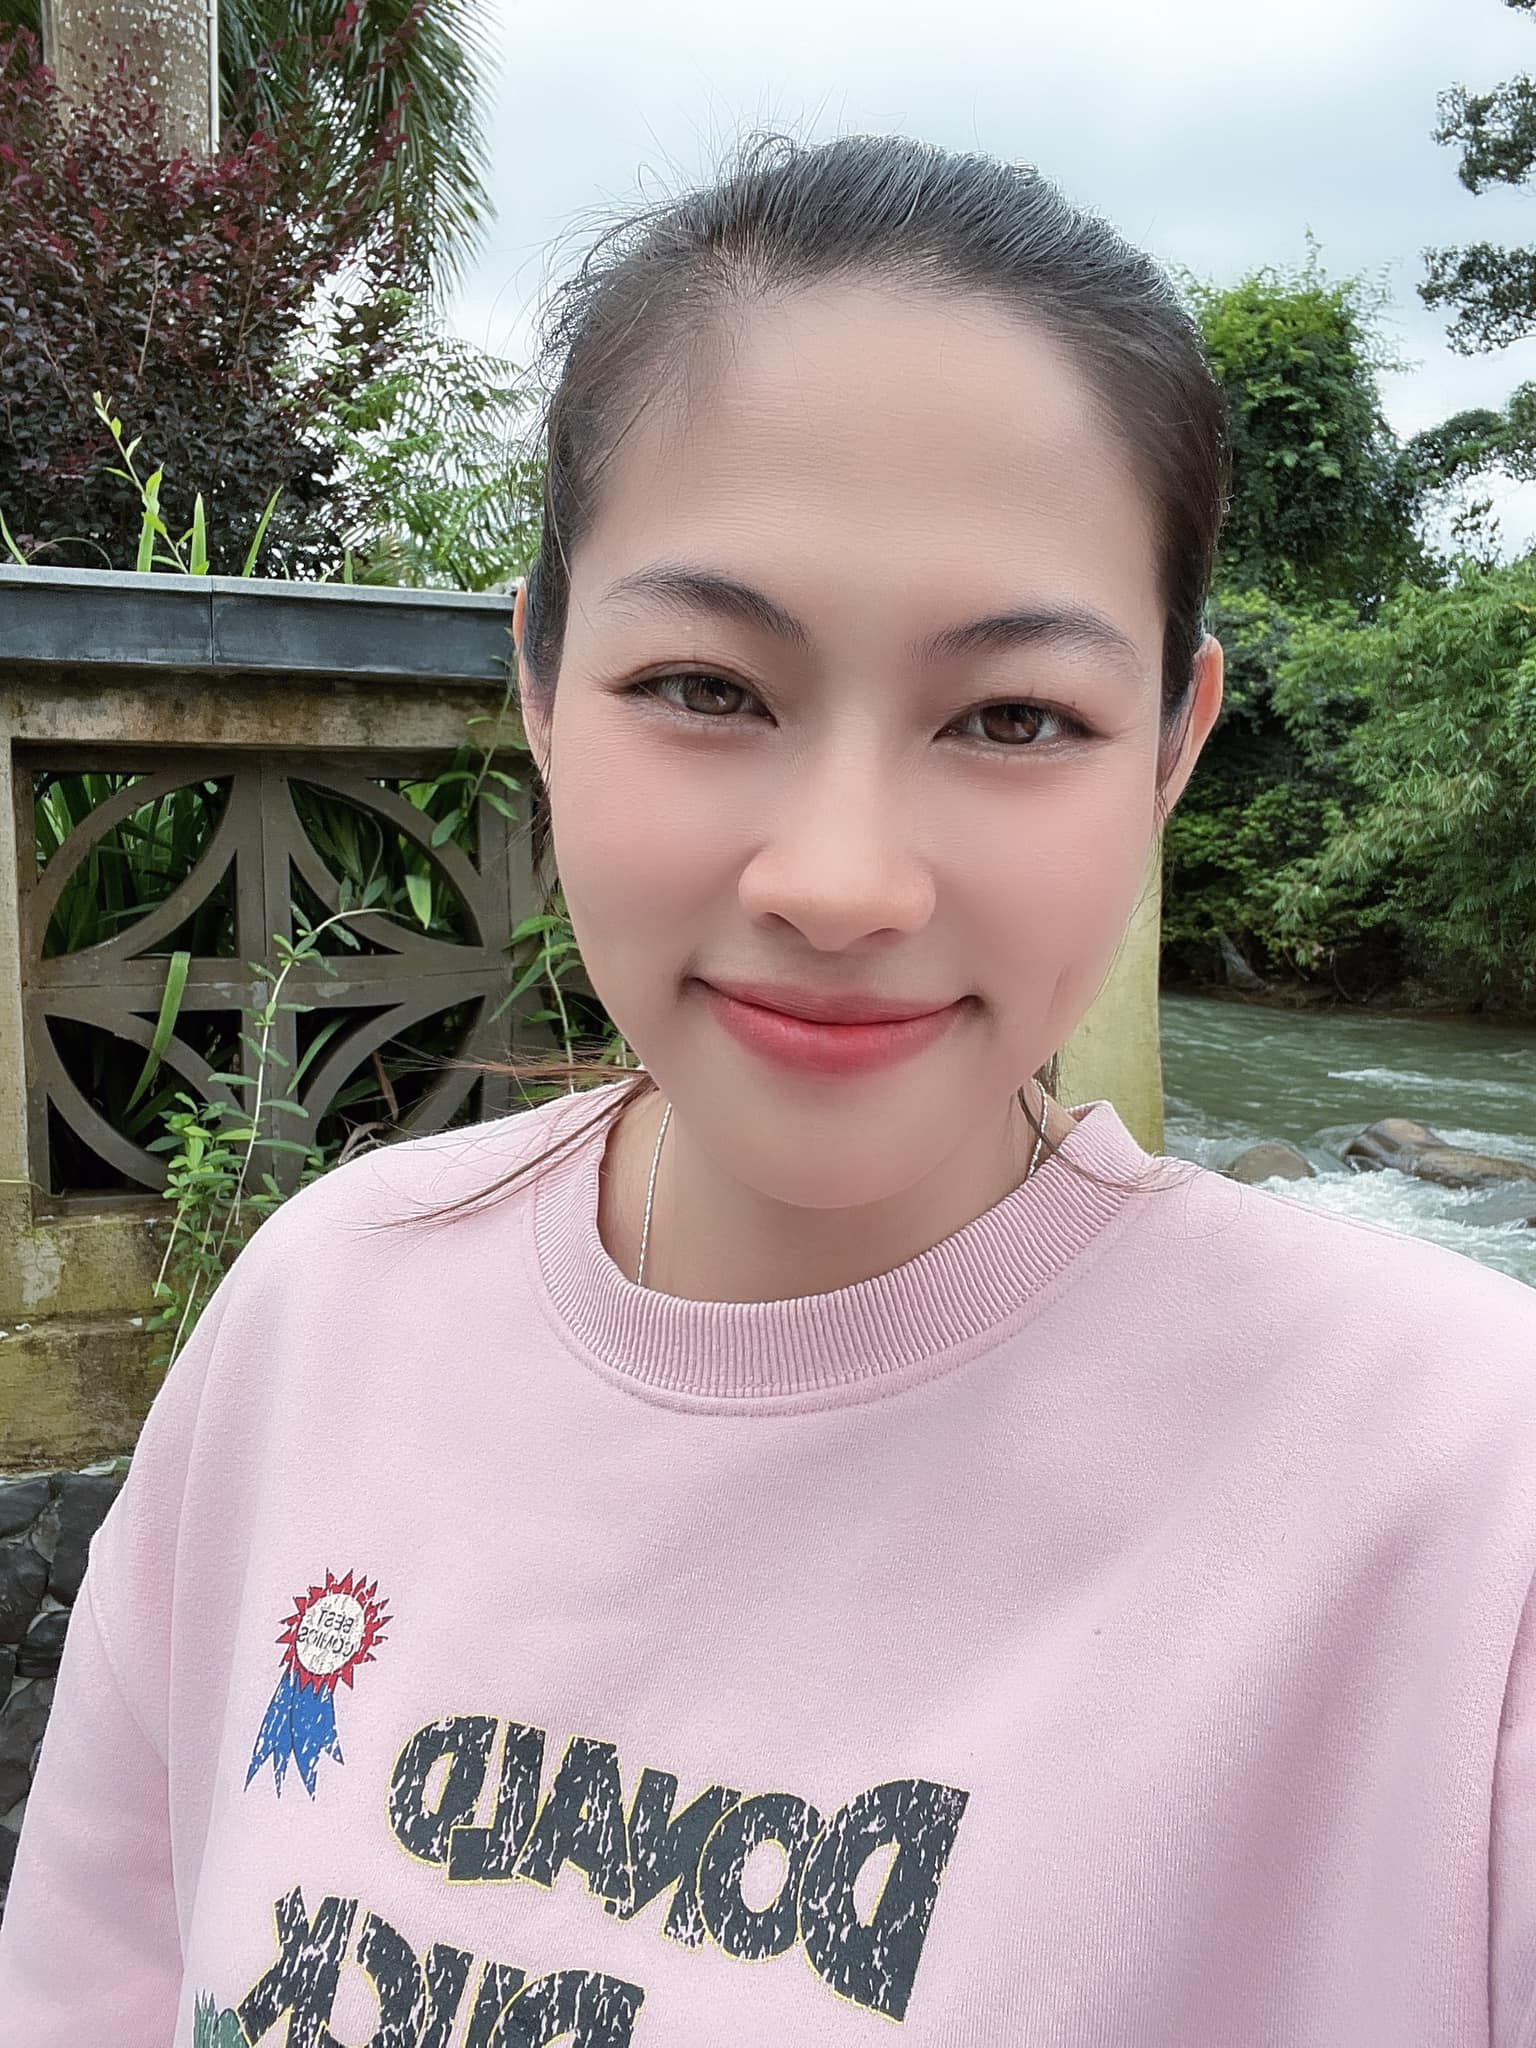 Chị gái Hoa hậu Đặng Thu Thảo tuyên bố tiếp tục kiện Nguyễn Thúc Thùy Tiên, đòi bằng được 1,5 tỷ đồng - ảnh 3